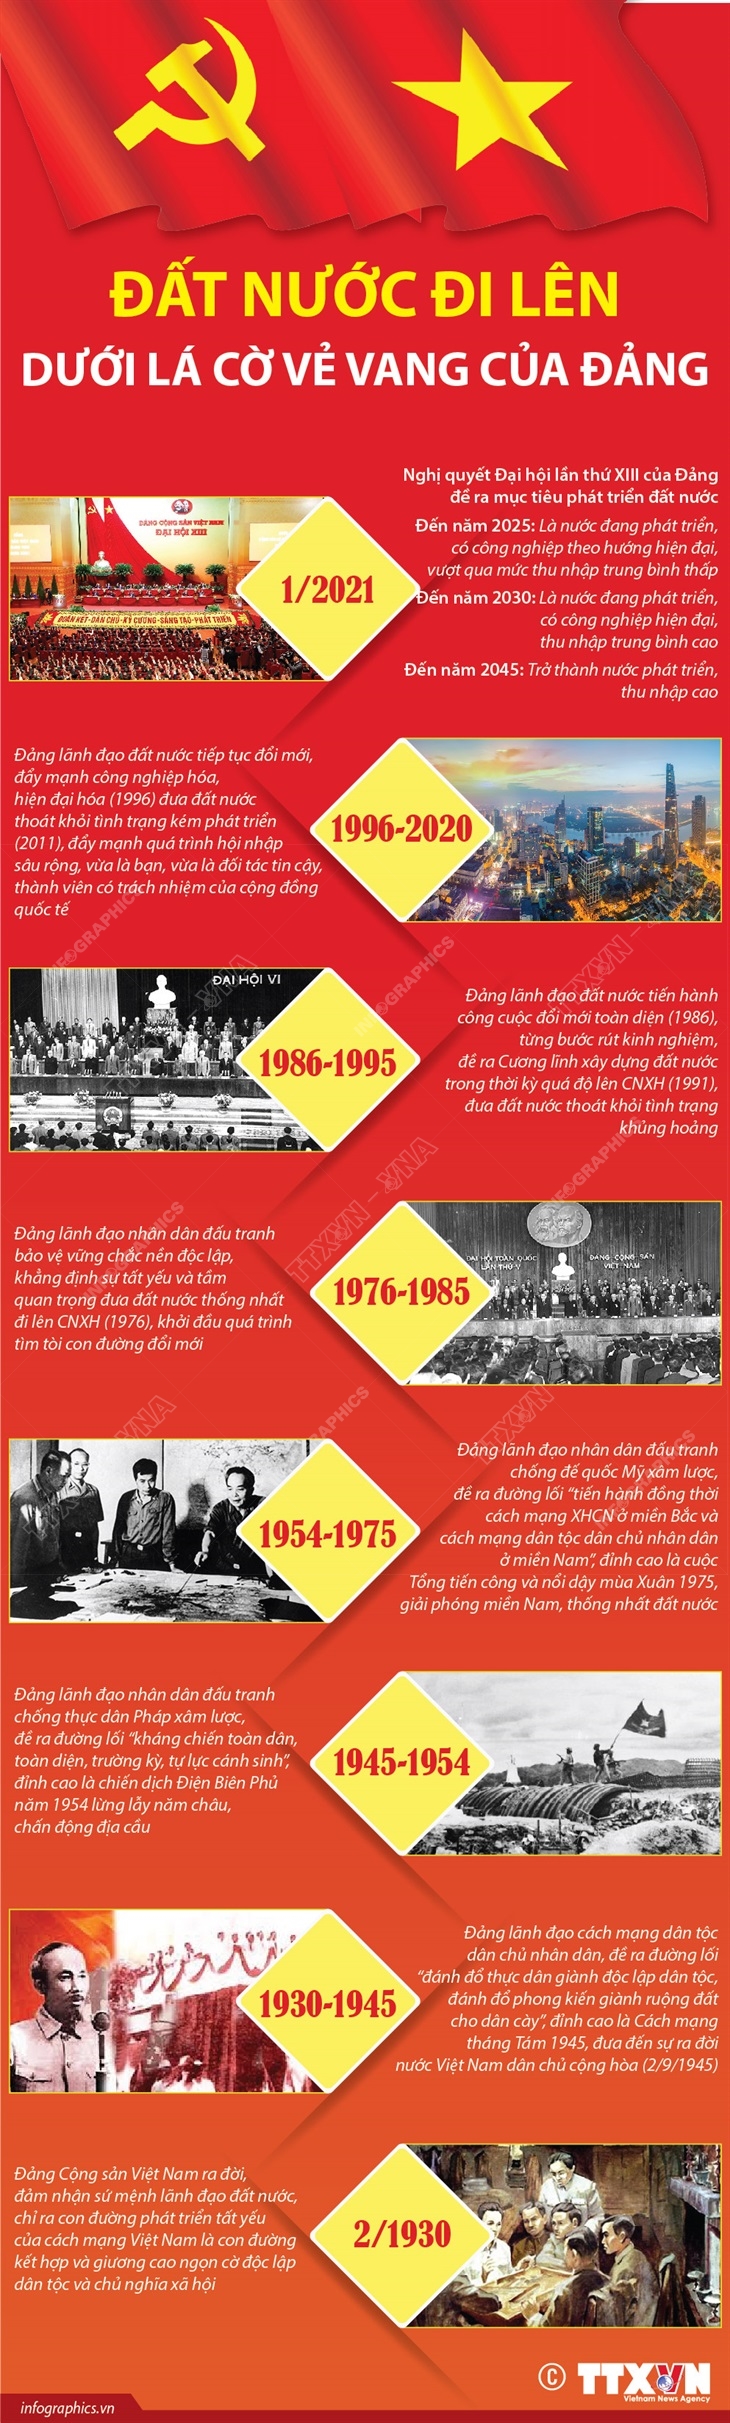 Đảng cộng sản Việt Nam đã trải qua hành trình đầy gian khổ để đưa đất nước ta đến thành công ngày hôm nay. Với những thành tựu lớn trong kinh tế, chính trị và xã hội, chúng ta tự hào về sự lãnh đạo của Đảng. Hình ảnh liên quan sẽ giúp bạn hiểu thêm về những cống hiến của Đảng cho quê hương.